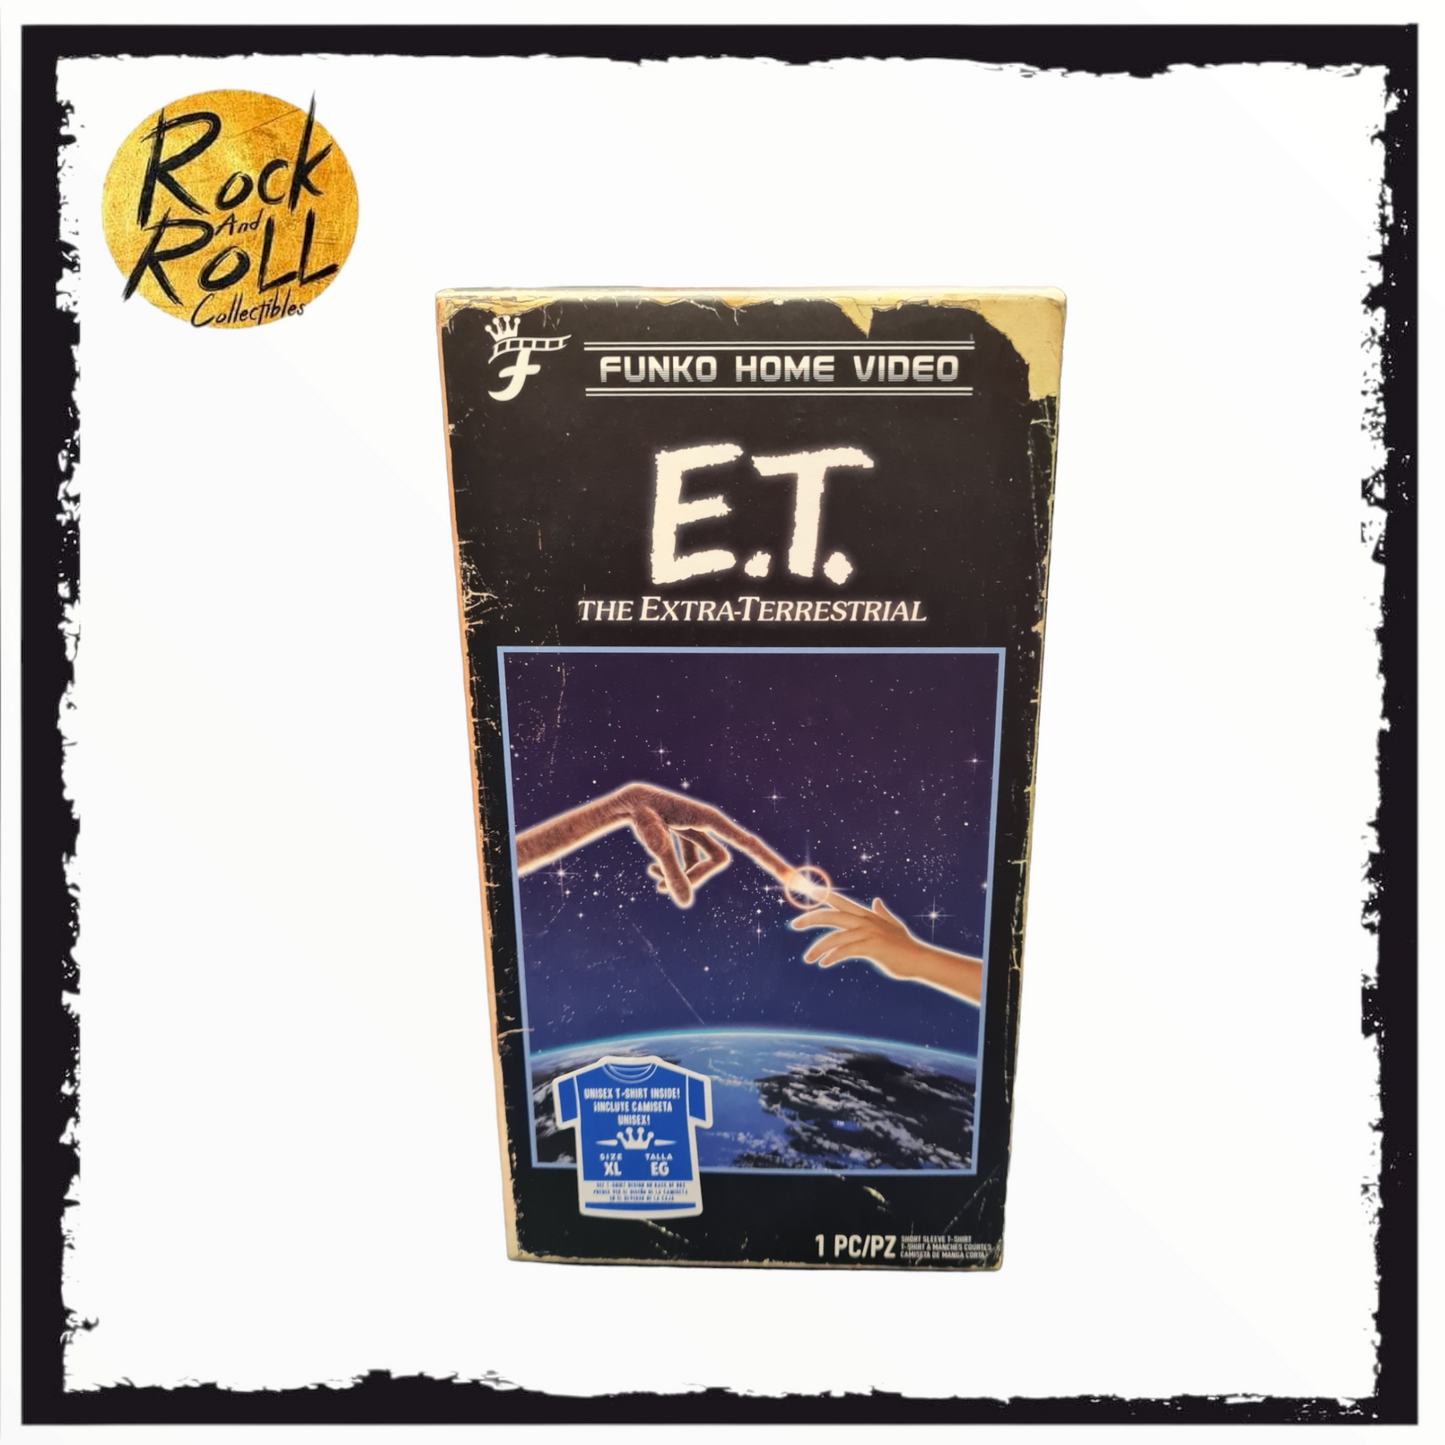 E.T. The Extra Terrestrial Funko! Tee Size XL. Funko Home Video Box.